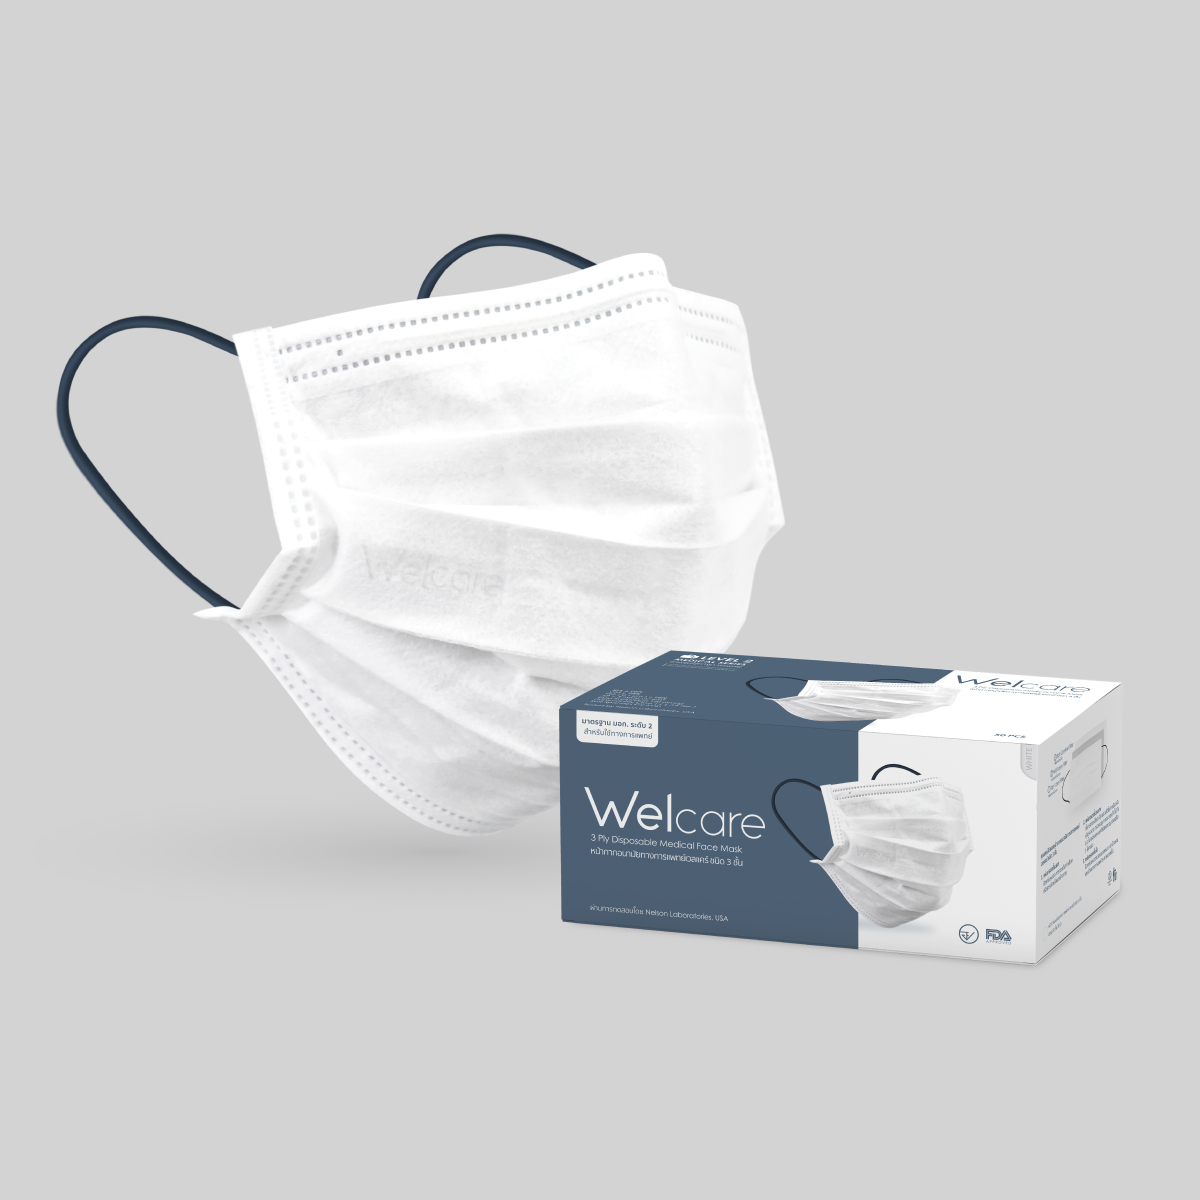 Welcare Mask1,Welcare Level 2 เวลแคร์หน้ากากอนามัยทางการแพทย์ กรอง 3ชั้น  มอก.เลขที่2424-2562 ของแท้ พร้อมส่ง